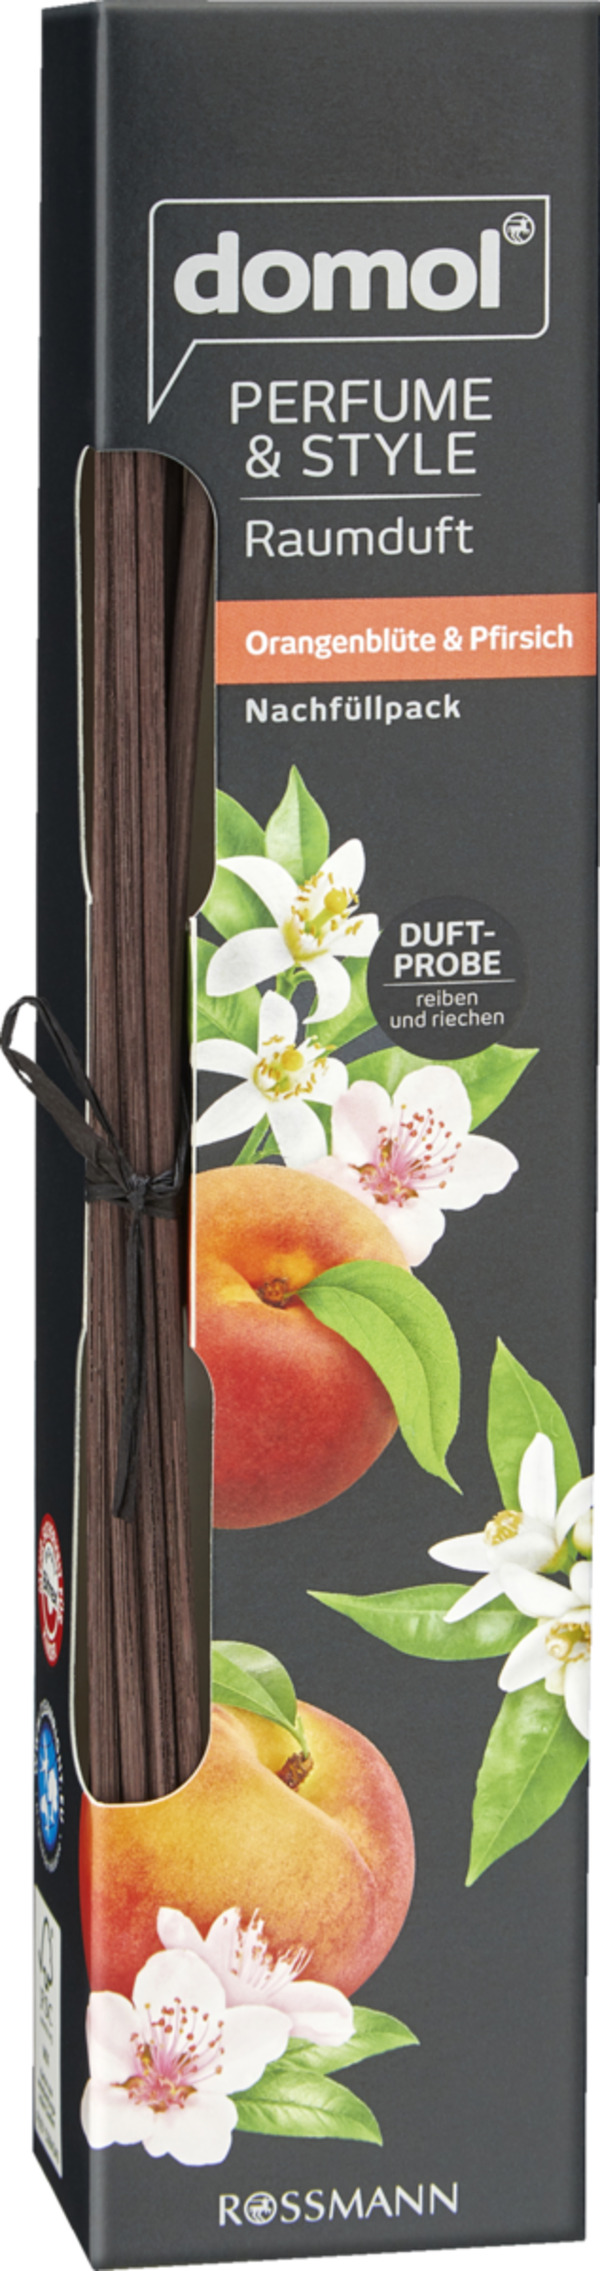 Bild 1 von domol Perfume & Style Raumduft Orangenblüte & Pfirsich Nachfüllpack